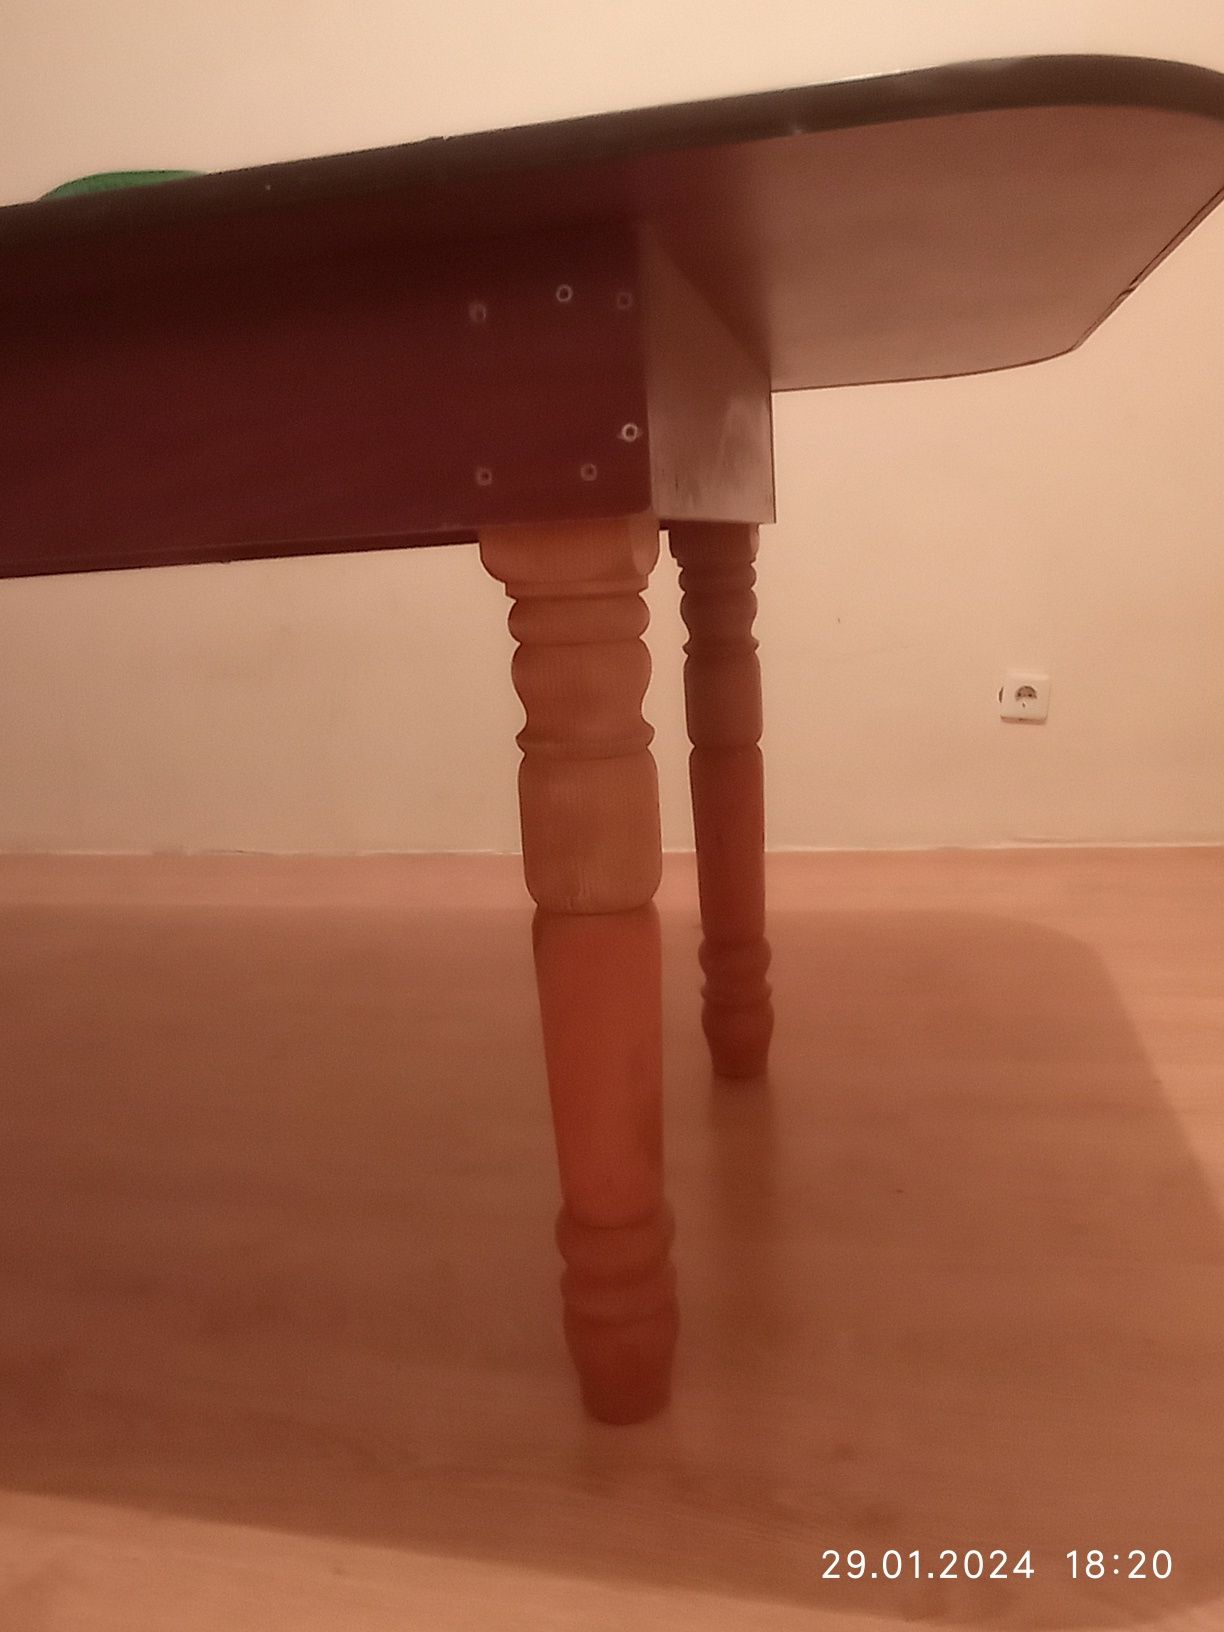 Гостевой стол ( жер стол ) ножки трансформеры размеры 2.5м на 90